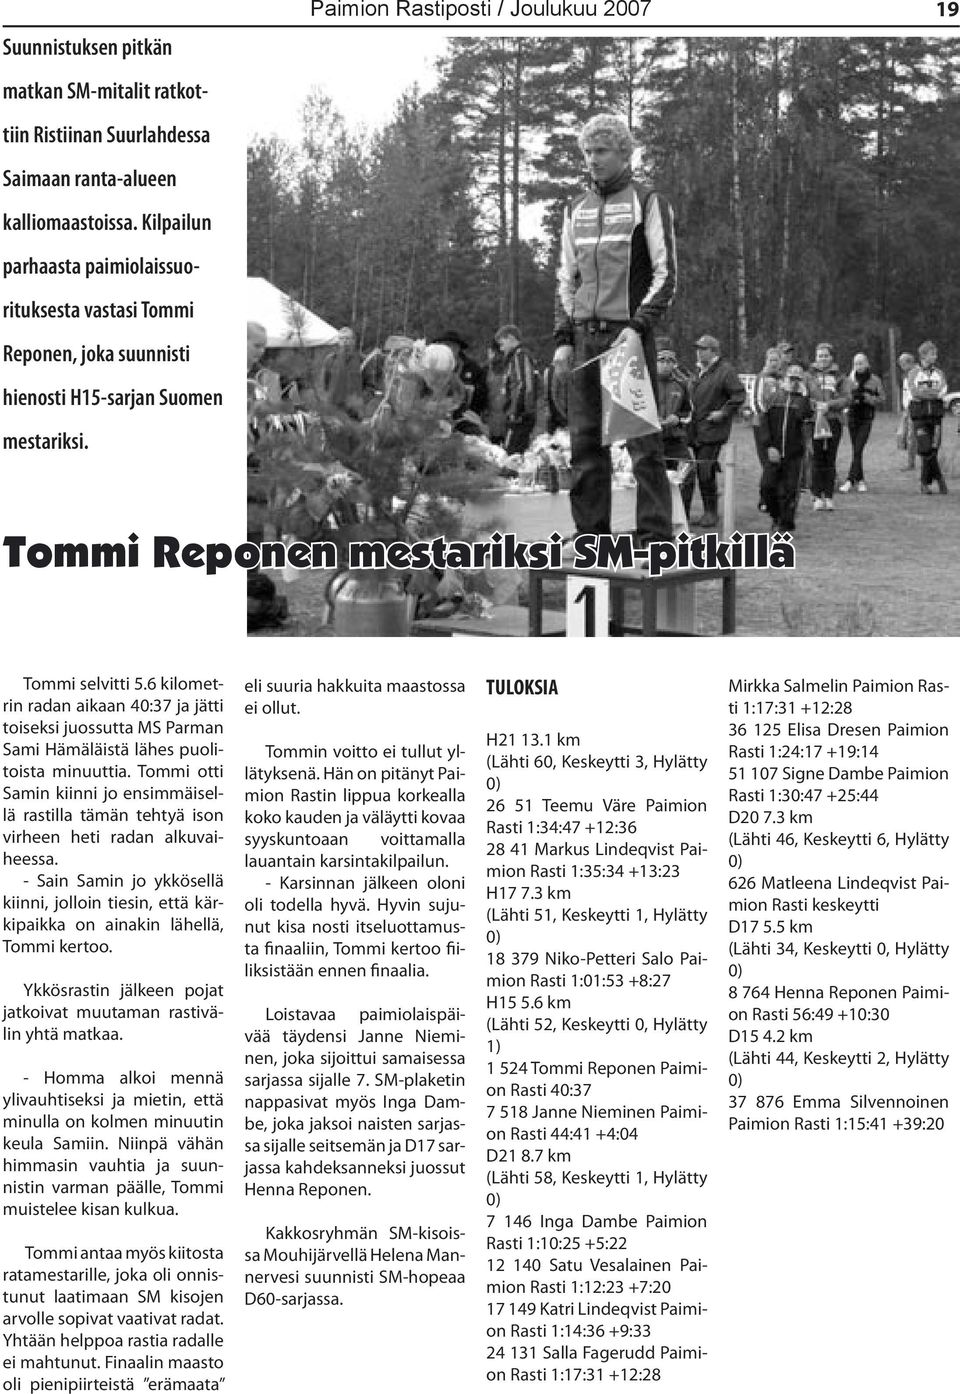 Paimion Rastiposti / Joulukuu 2007 19 Tommi Reponen mestariksi SM-pitkillä Tommi selvitti 5.